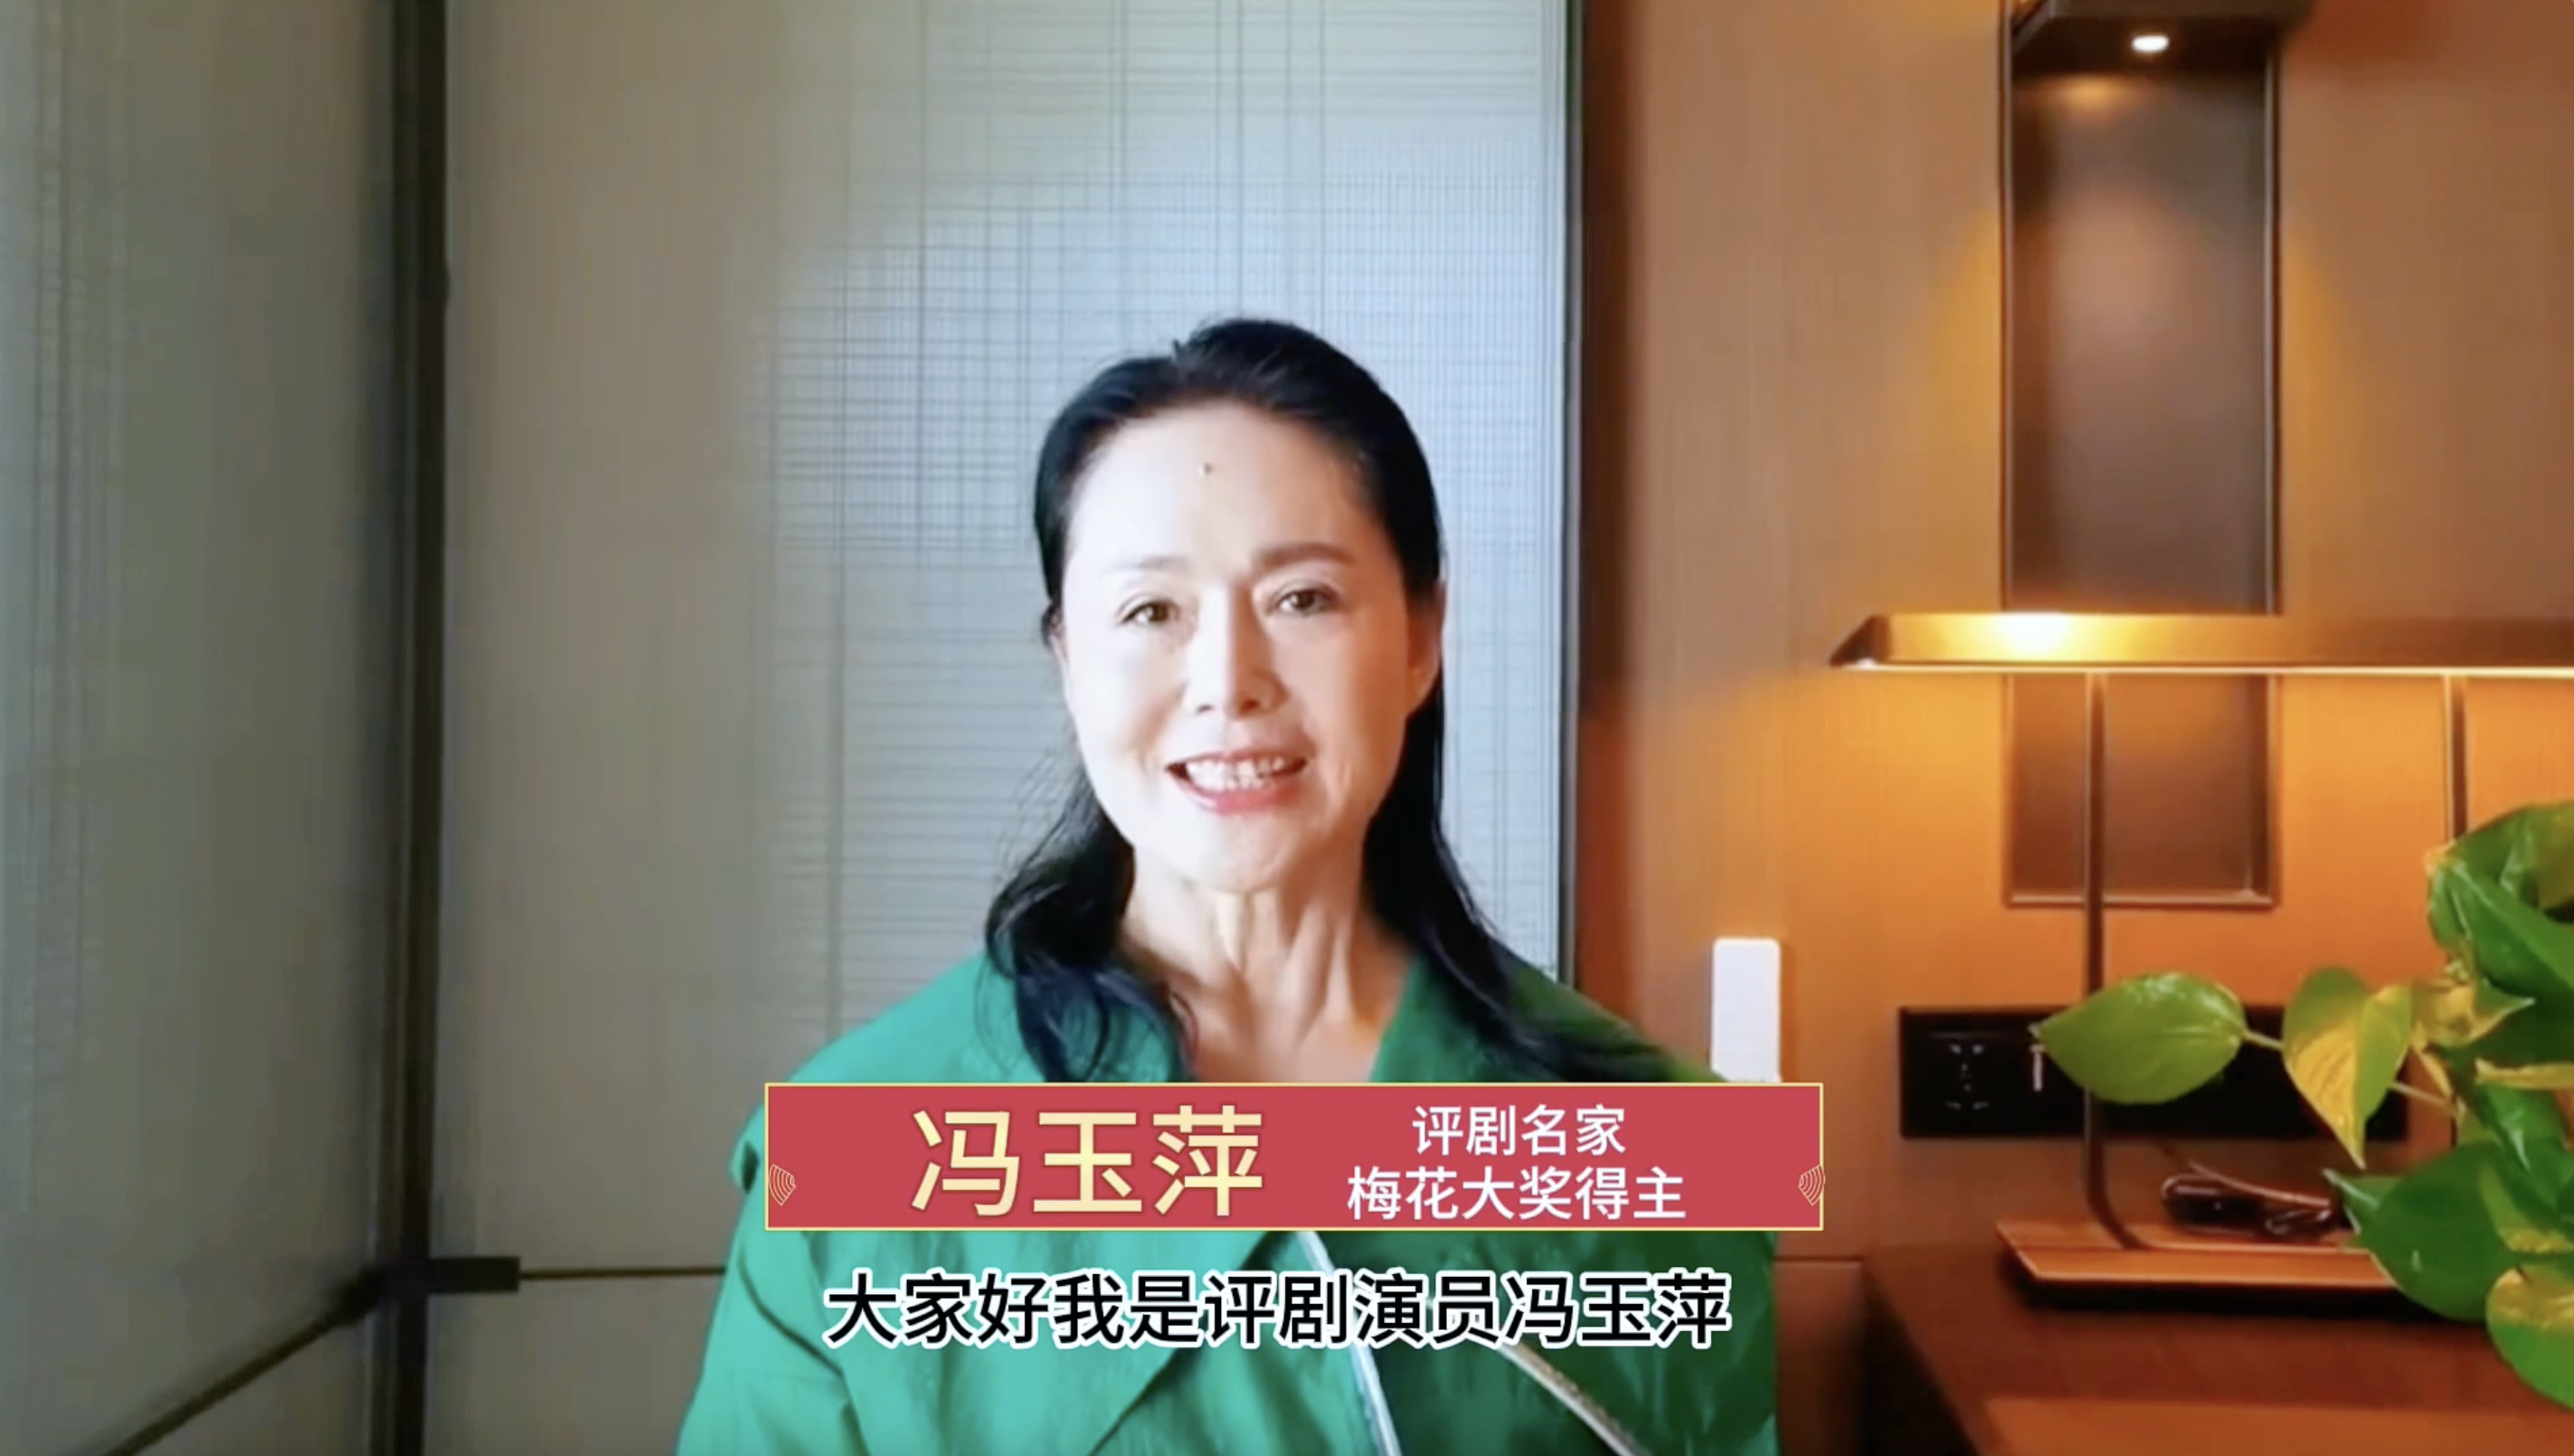 中国剧协副主席、评剧名家冯玉萍呼吁通过网络传播戏曲